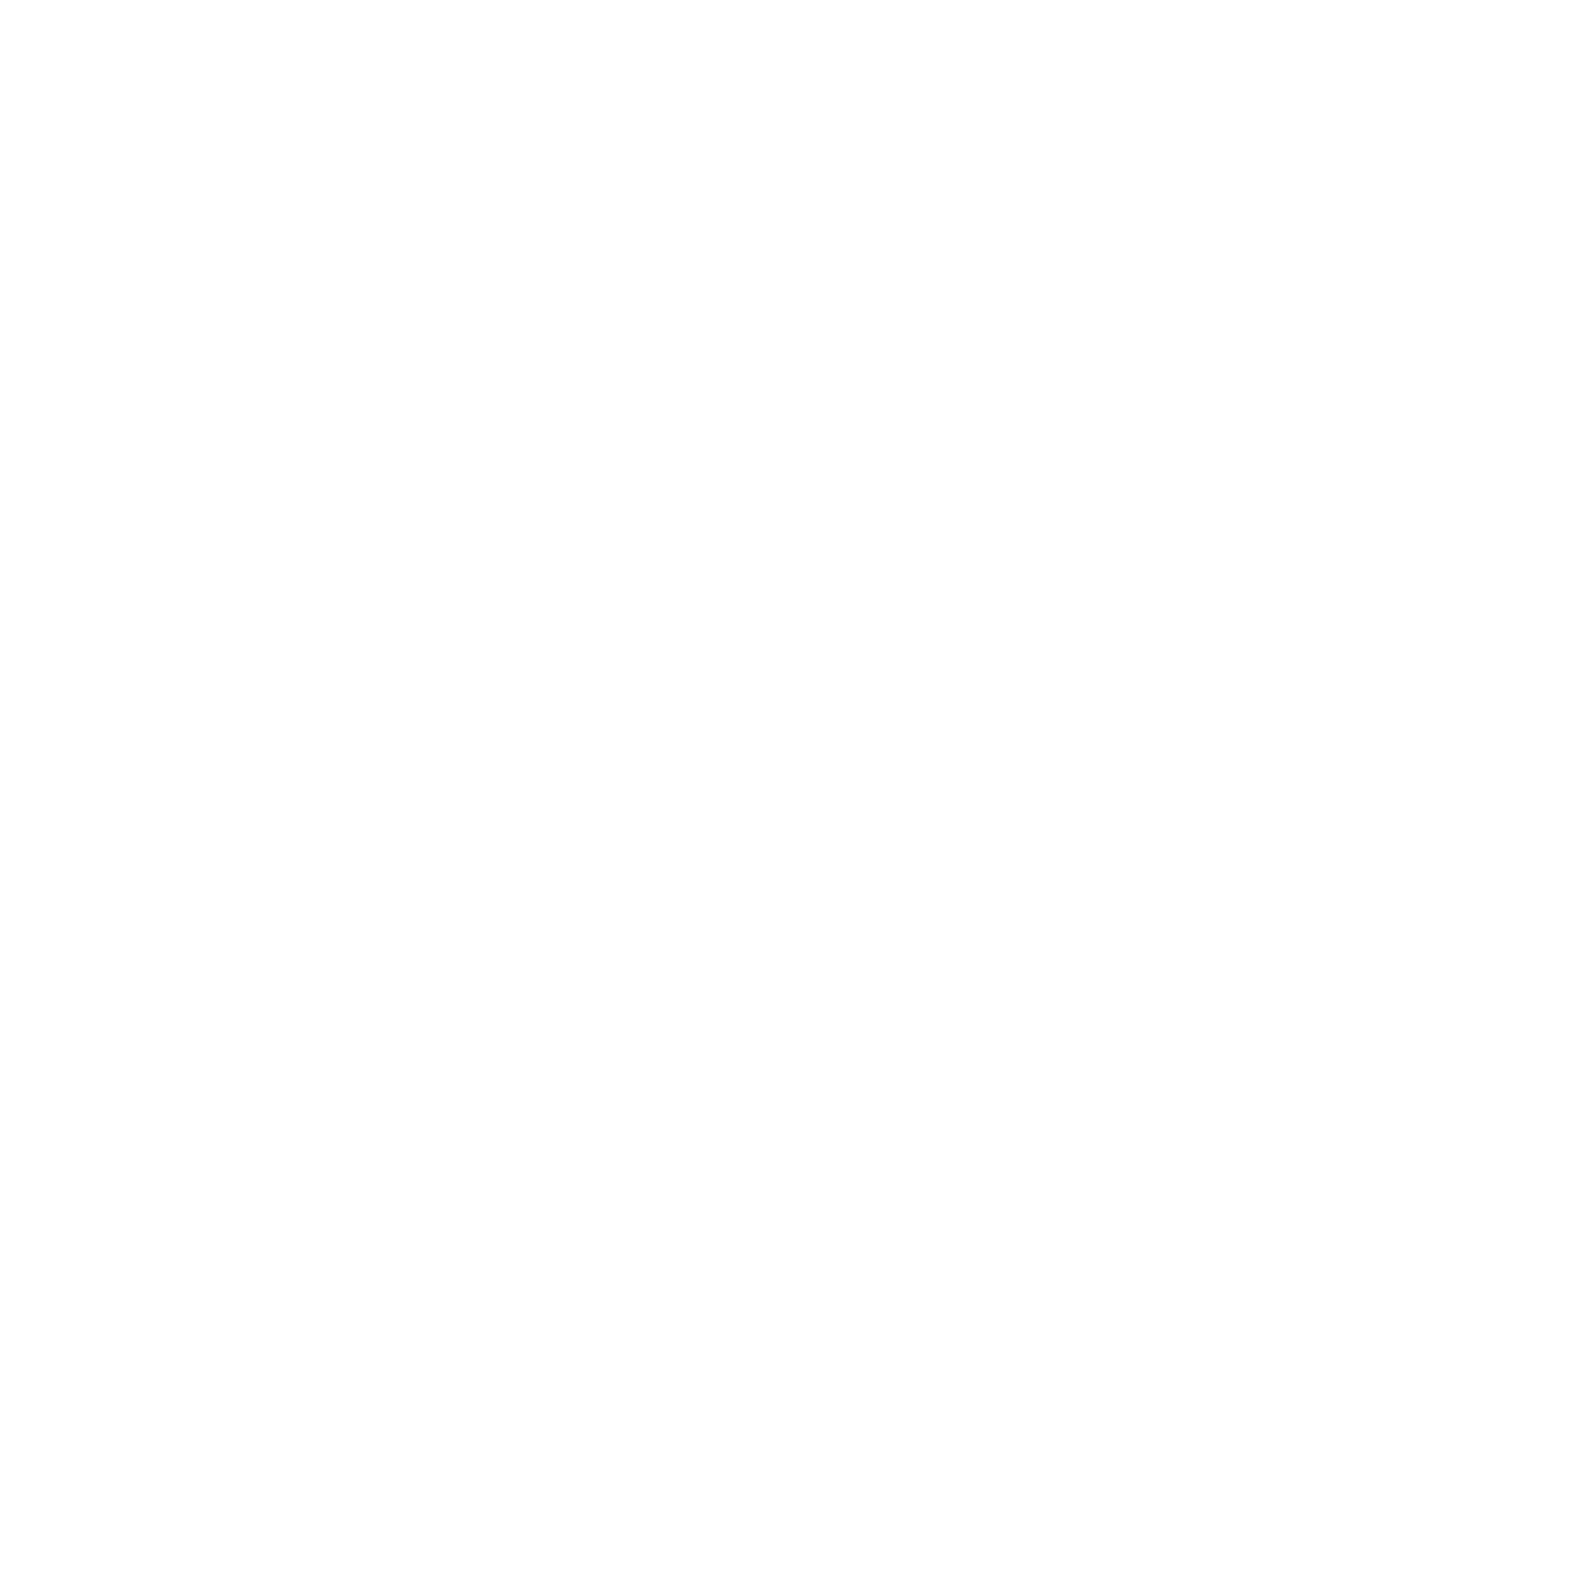 Söktas Tekstil logo pour fonds sombres (PNG transparent)